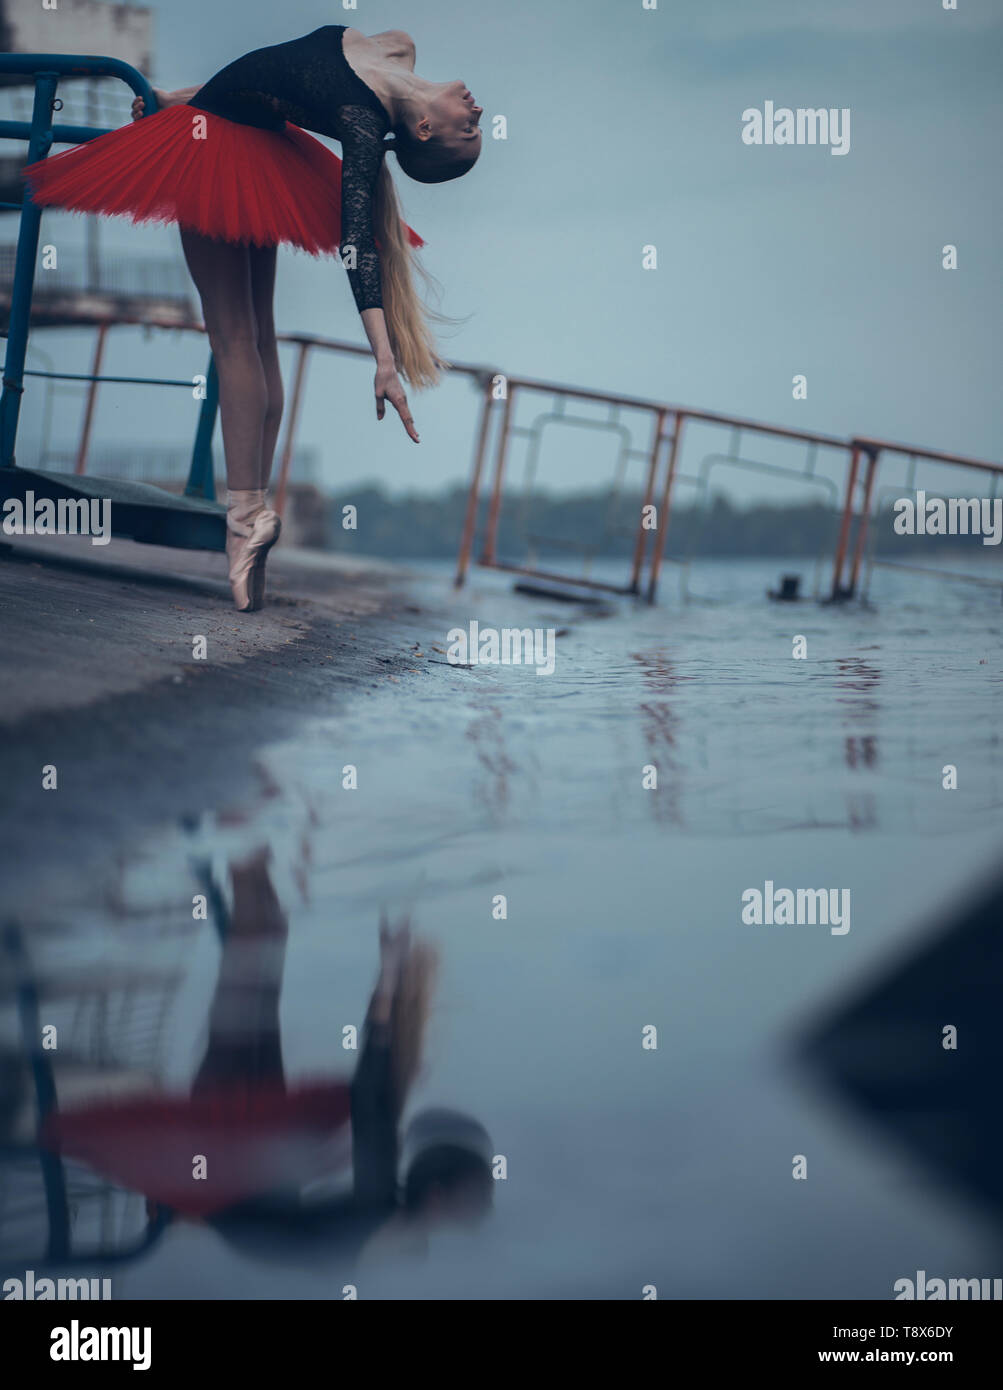 Ballerina tanzen an der Küste des Flusses in einem schwarzen und roten Tutu und ihr Spiegelbild im Wasser. Stockfoto